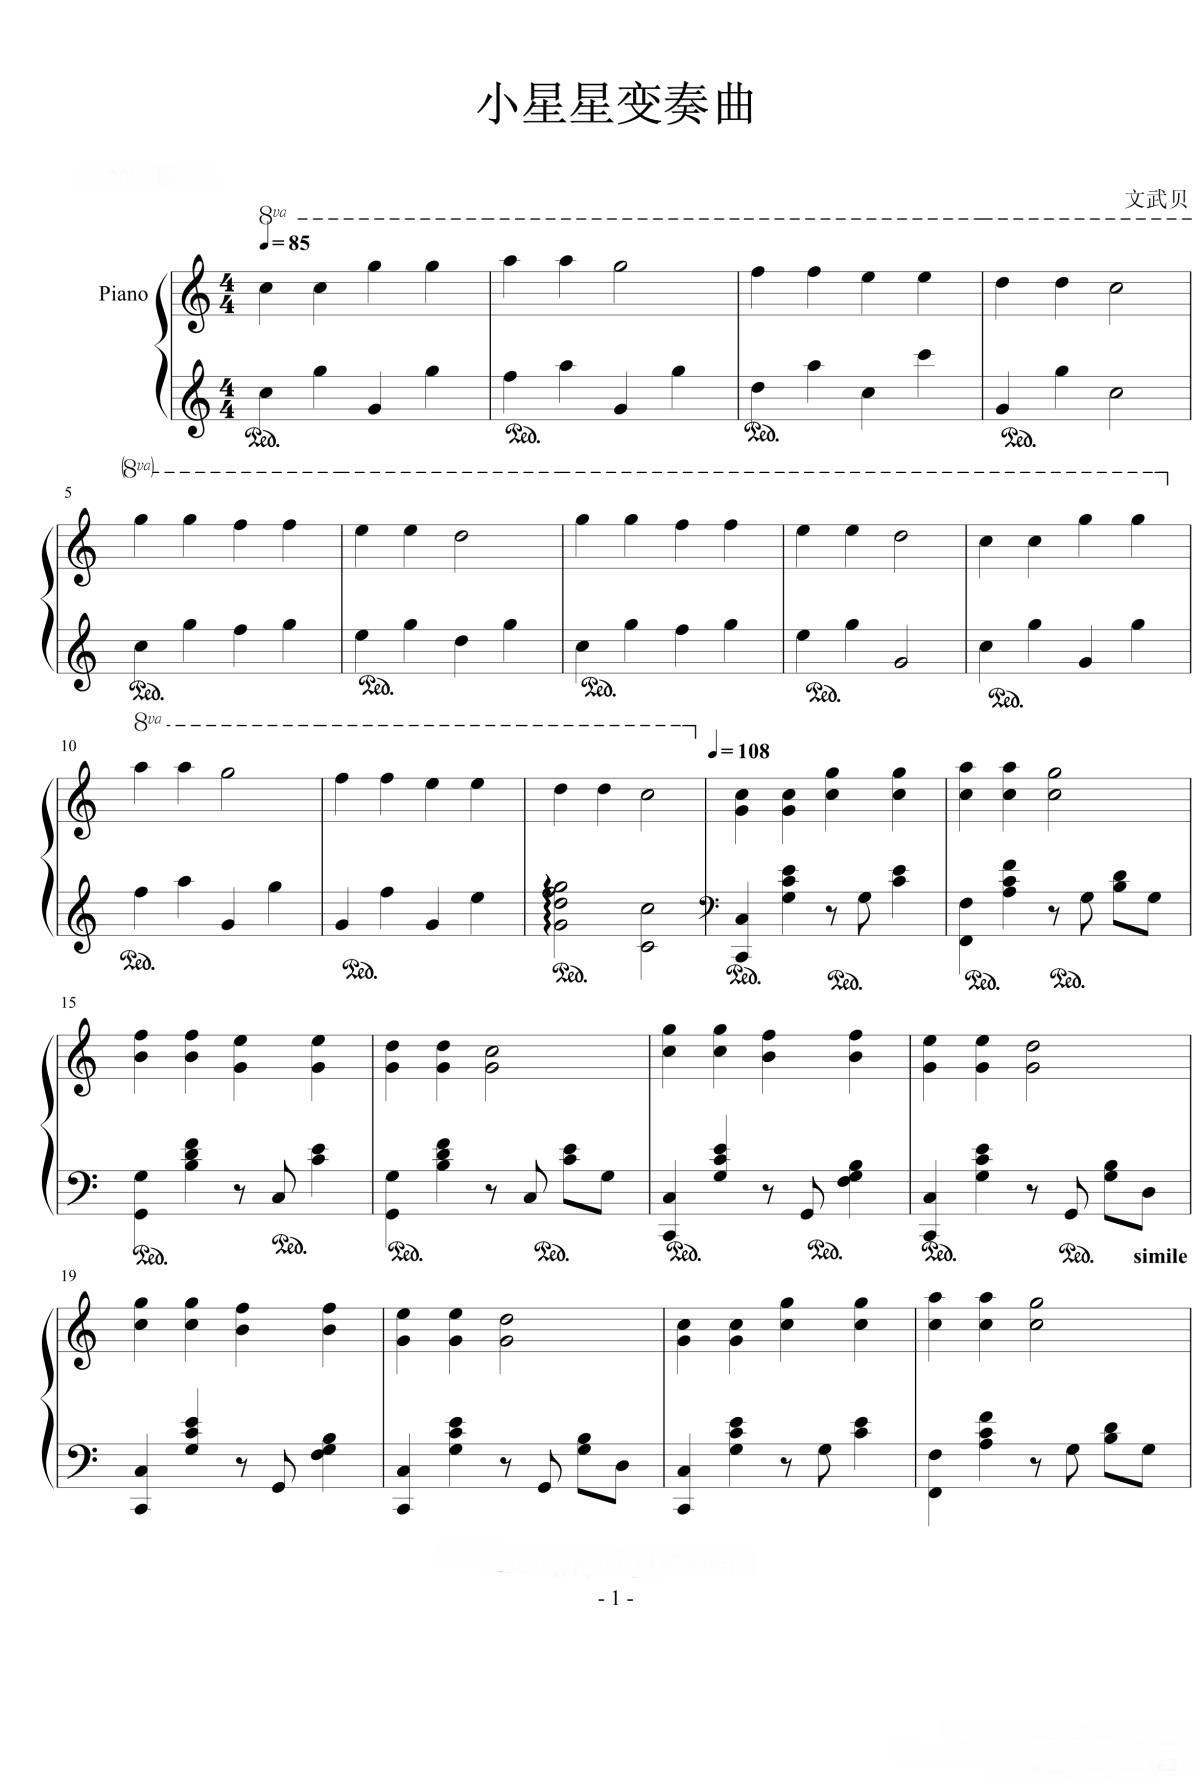 《小星星变奏曲》的钢琴谱钢琴曲谱 - 儿歌